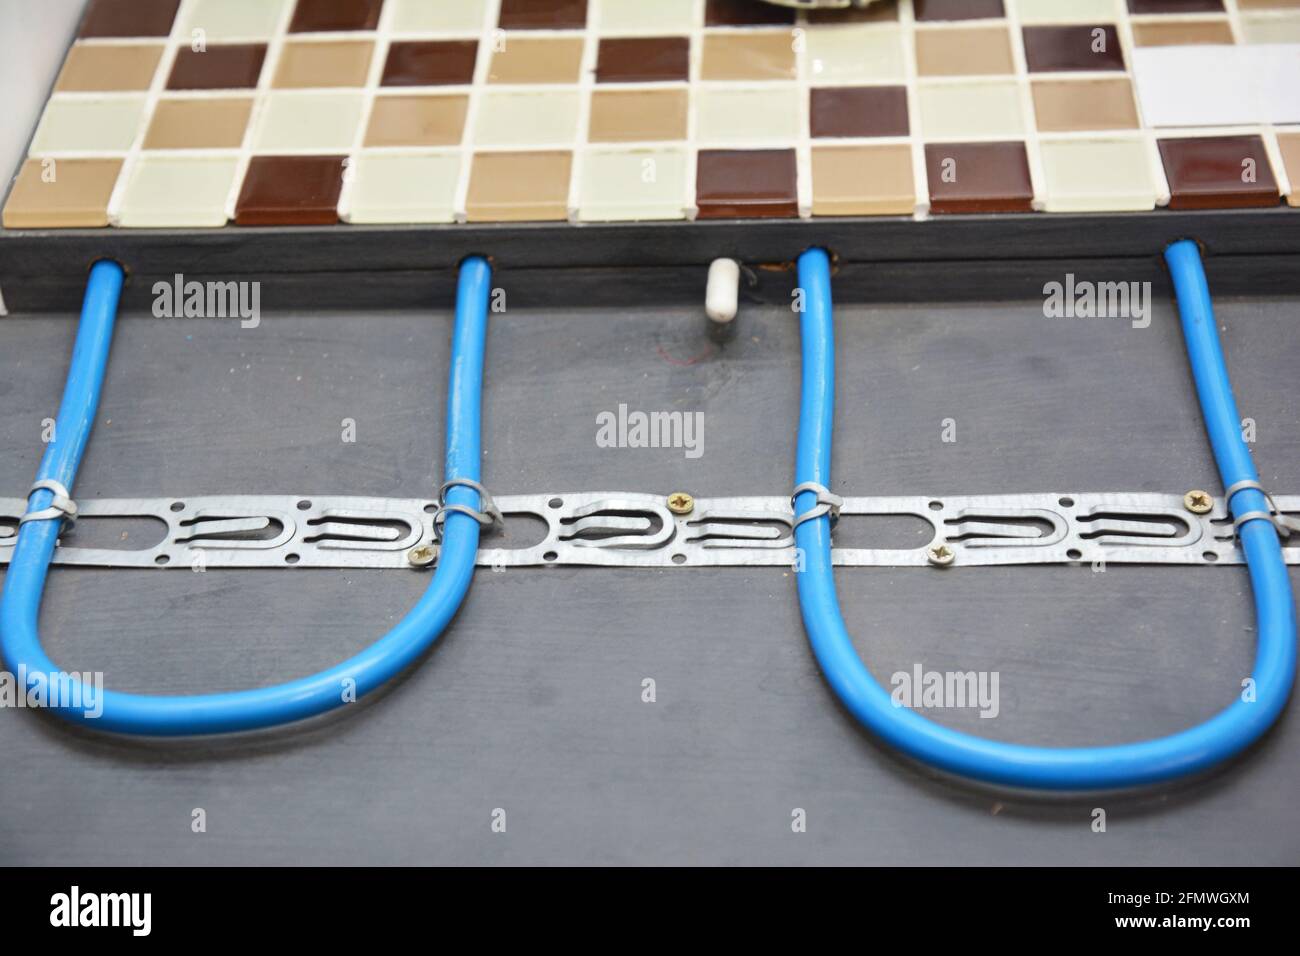 Elektrische Fußbodenheizung Installation: Nahaufnahme einer elektrischen Fußbodenheizung, die mit Mosaikfliesen im Badezimmer bedeckt ist. Stockfoto